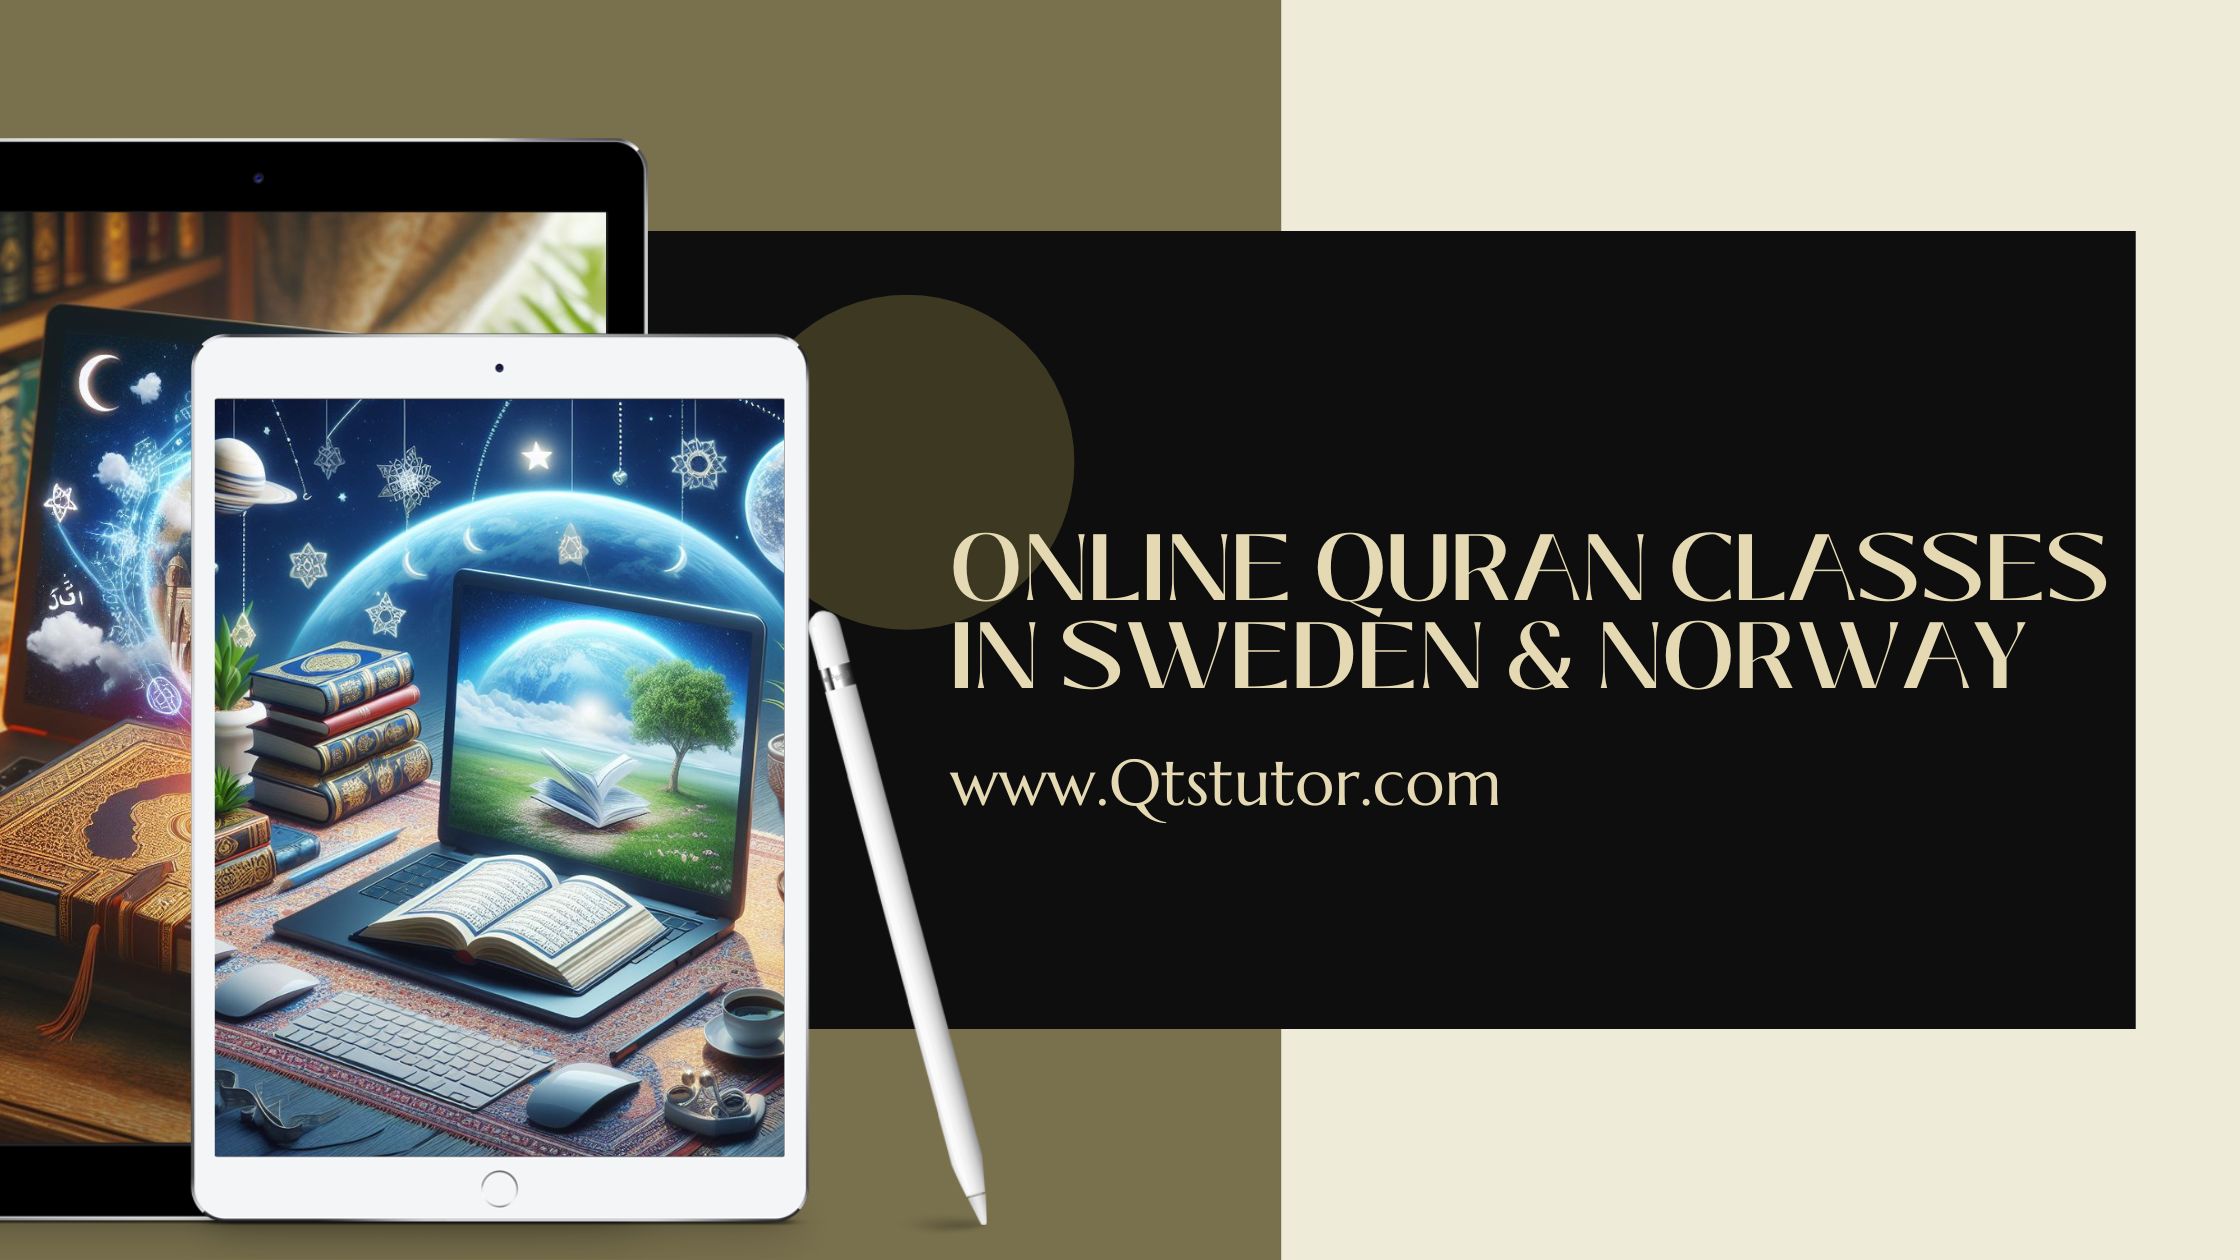 Online Quran Classes In Sweden & Norway